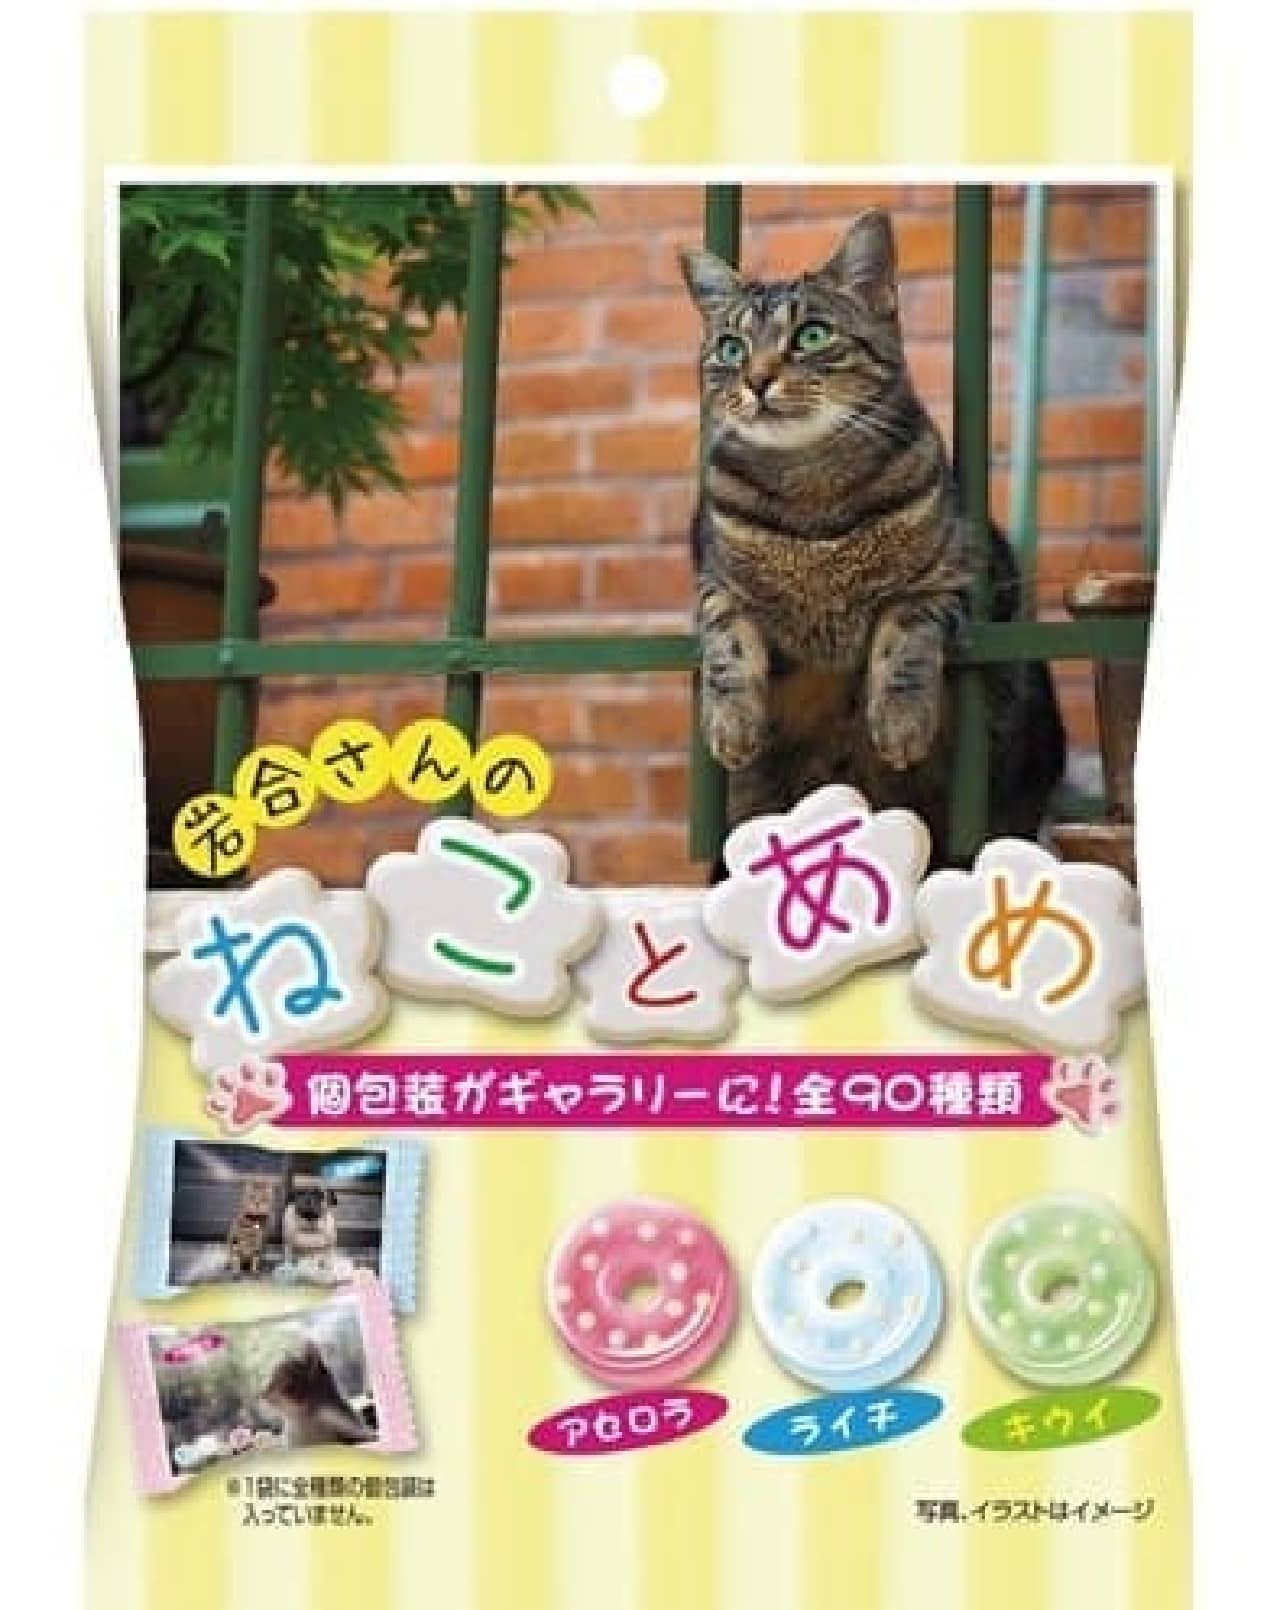 岩合光昭さんのネコ写真がパッケージ パインアメの「ねことあめ」